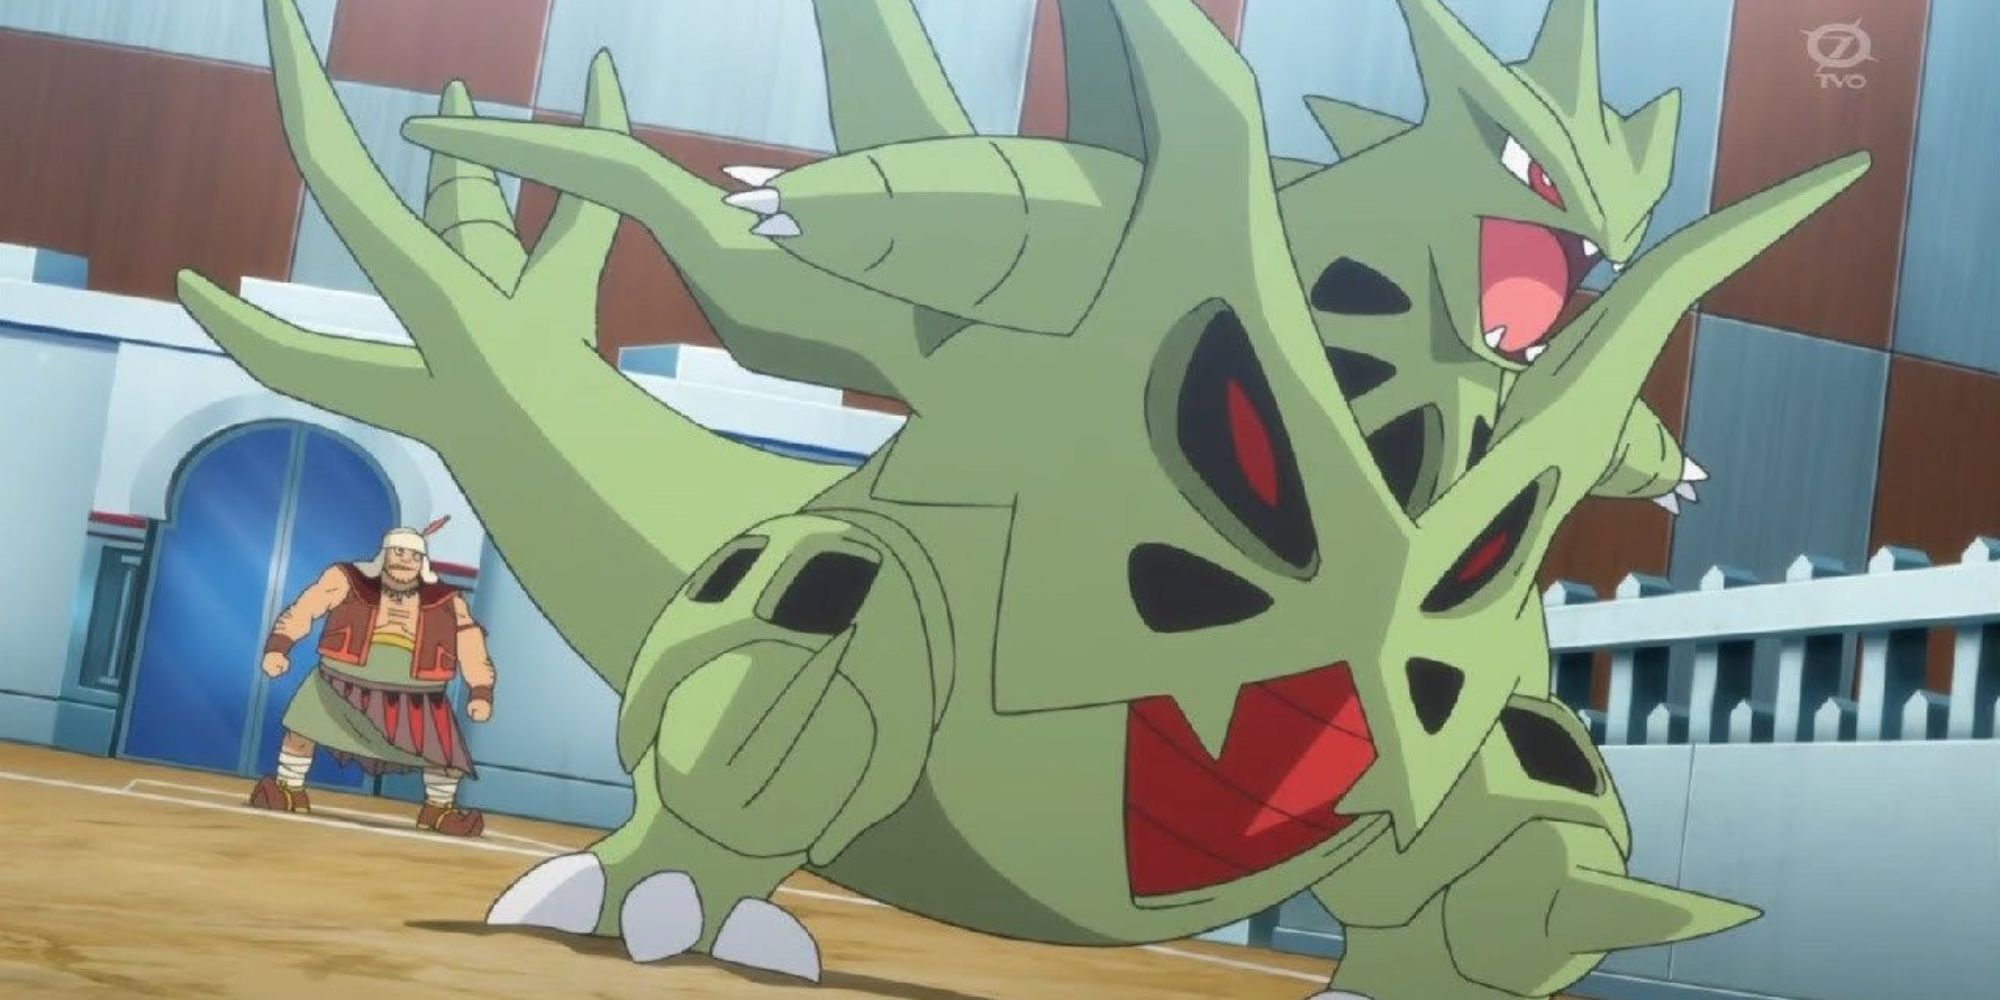 Mega Tyranitar roars before starting a battle in the Pokemon anime.